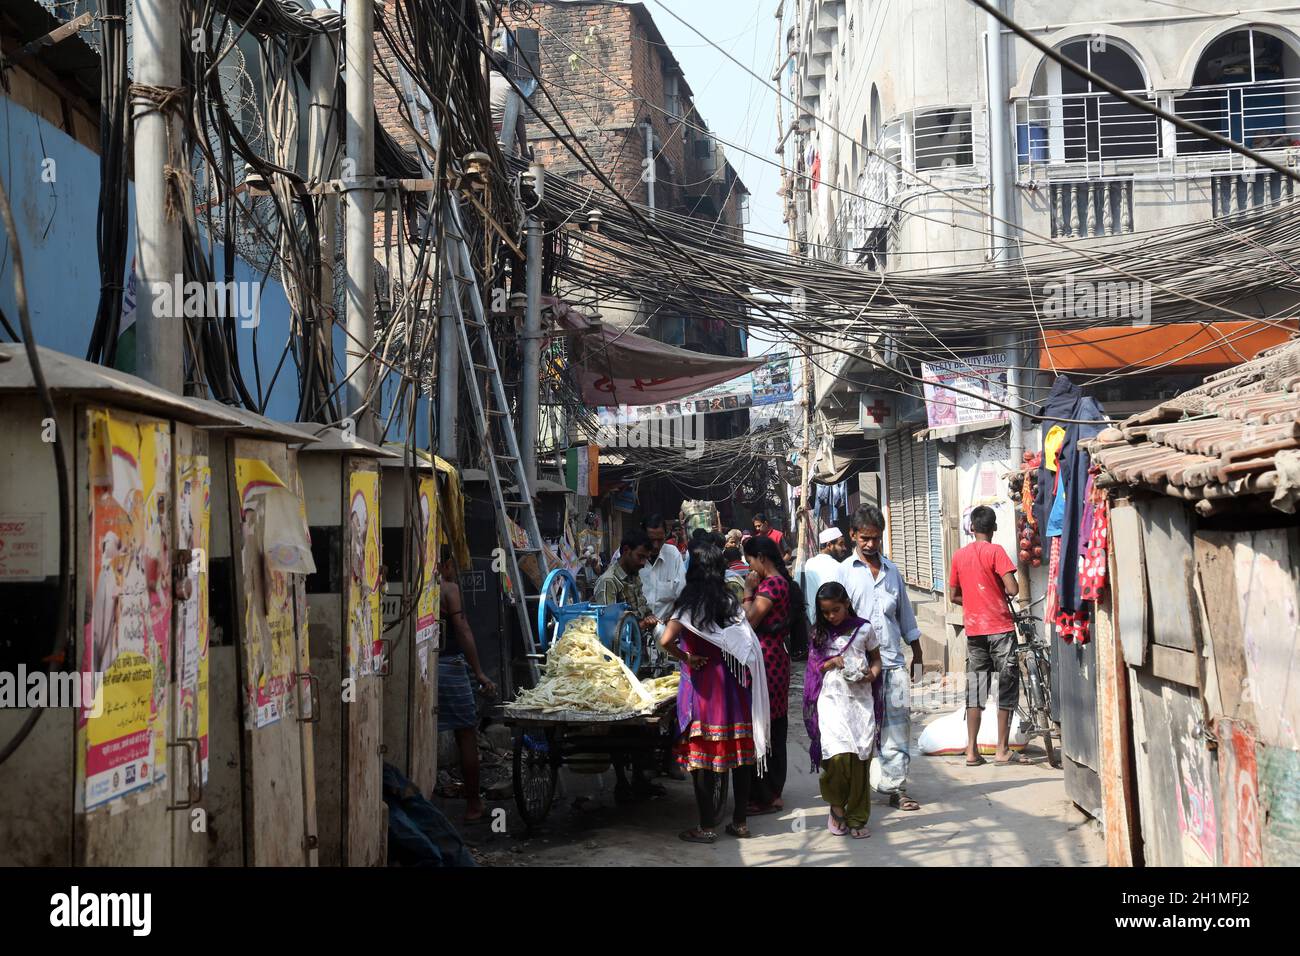 Ghetto and slums in Kolkata, India Stock Photo